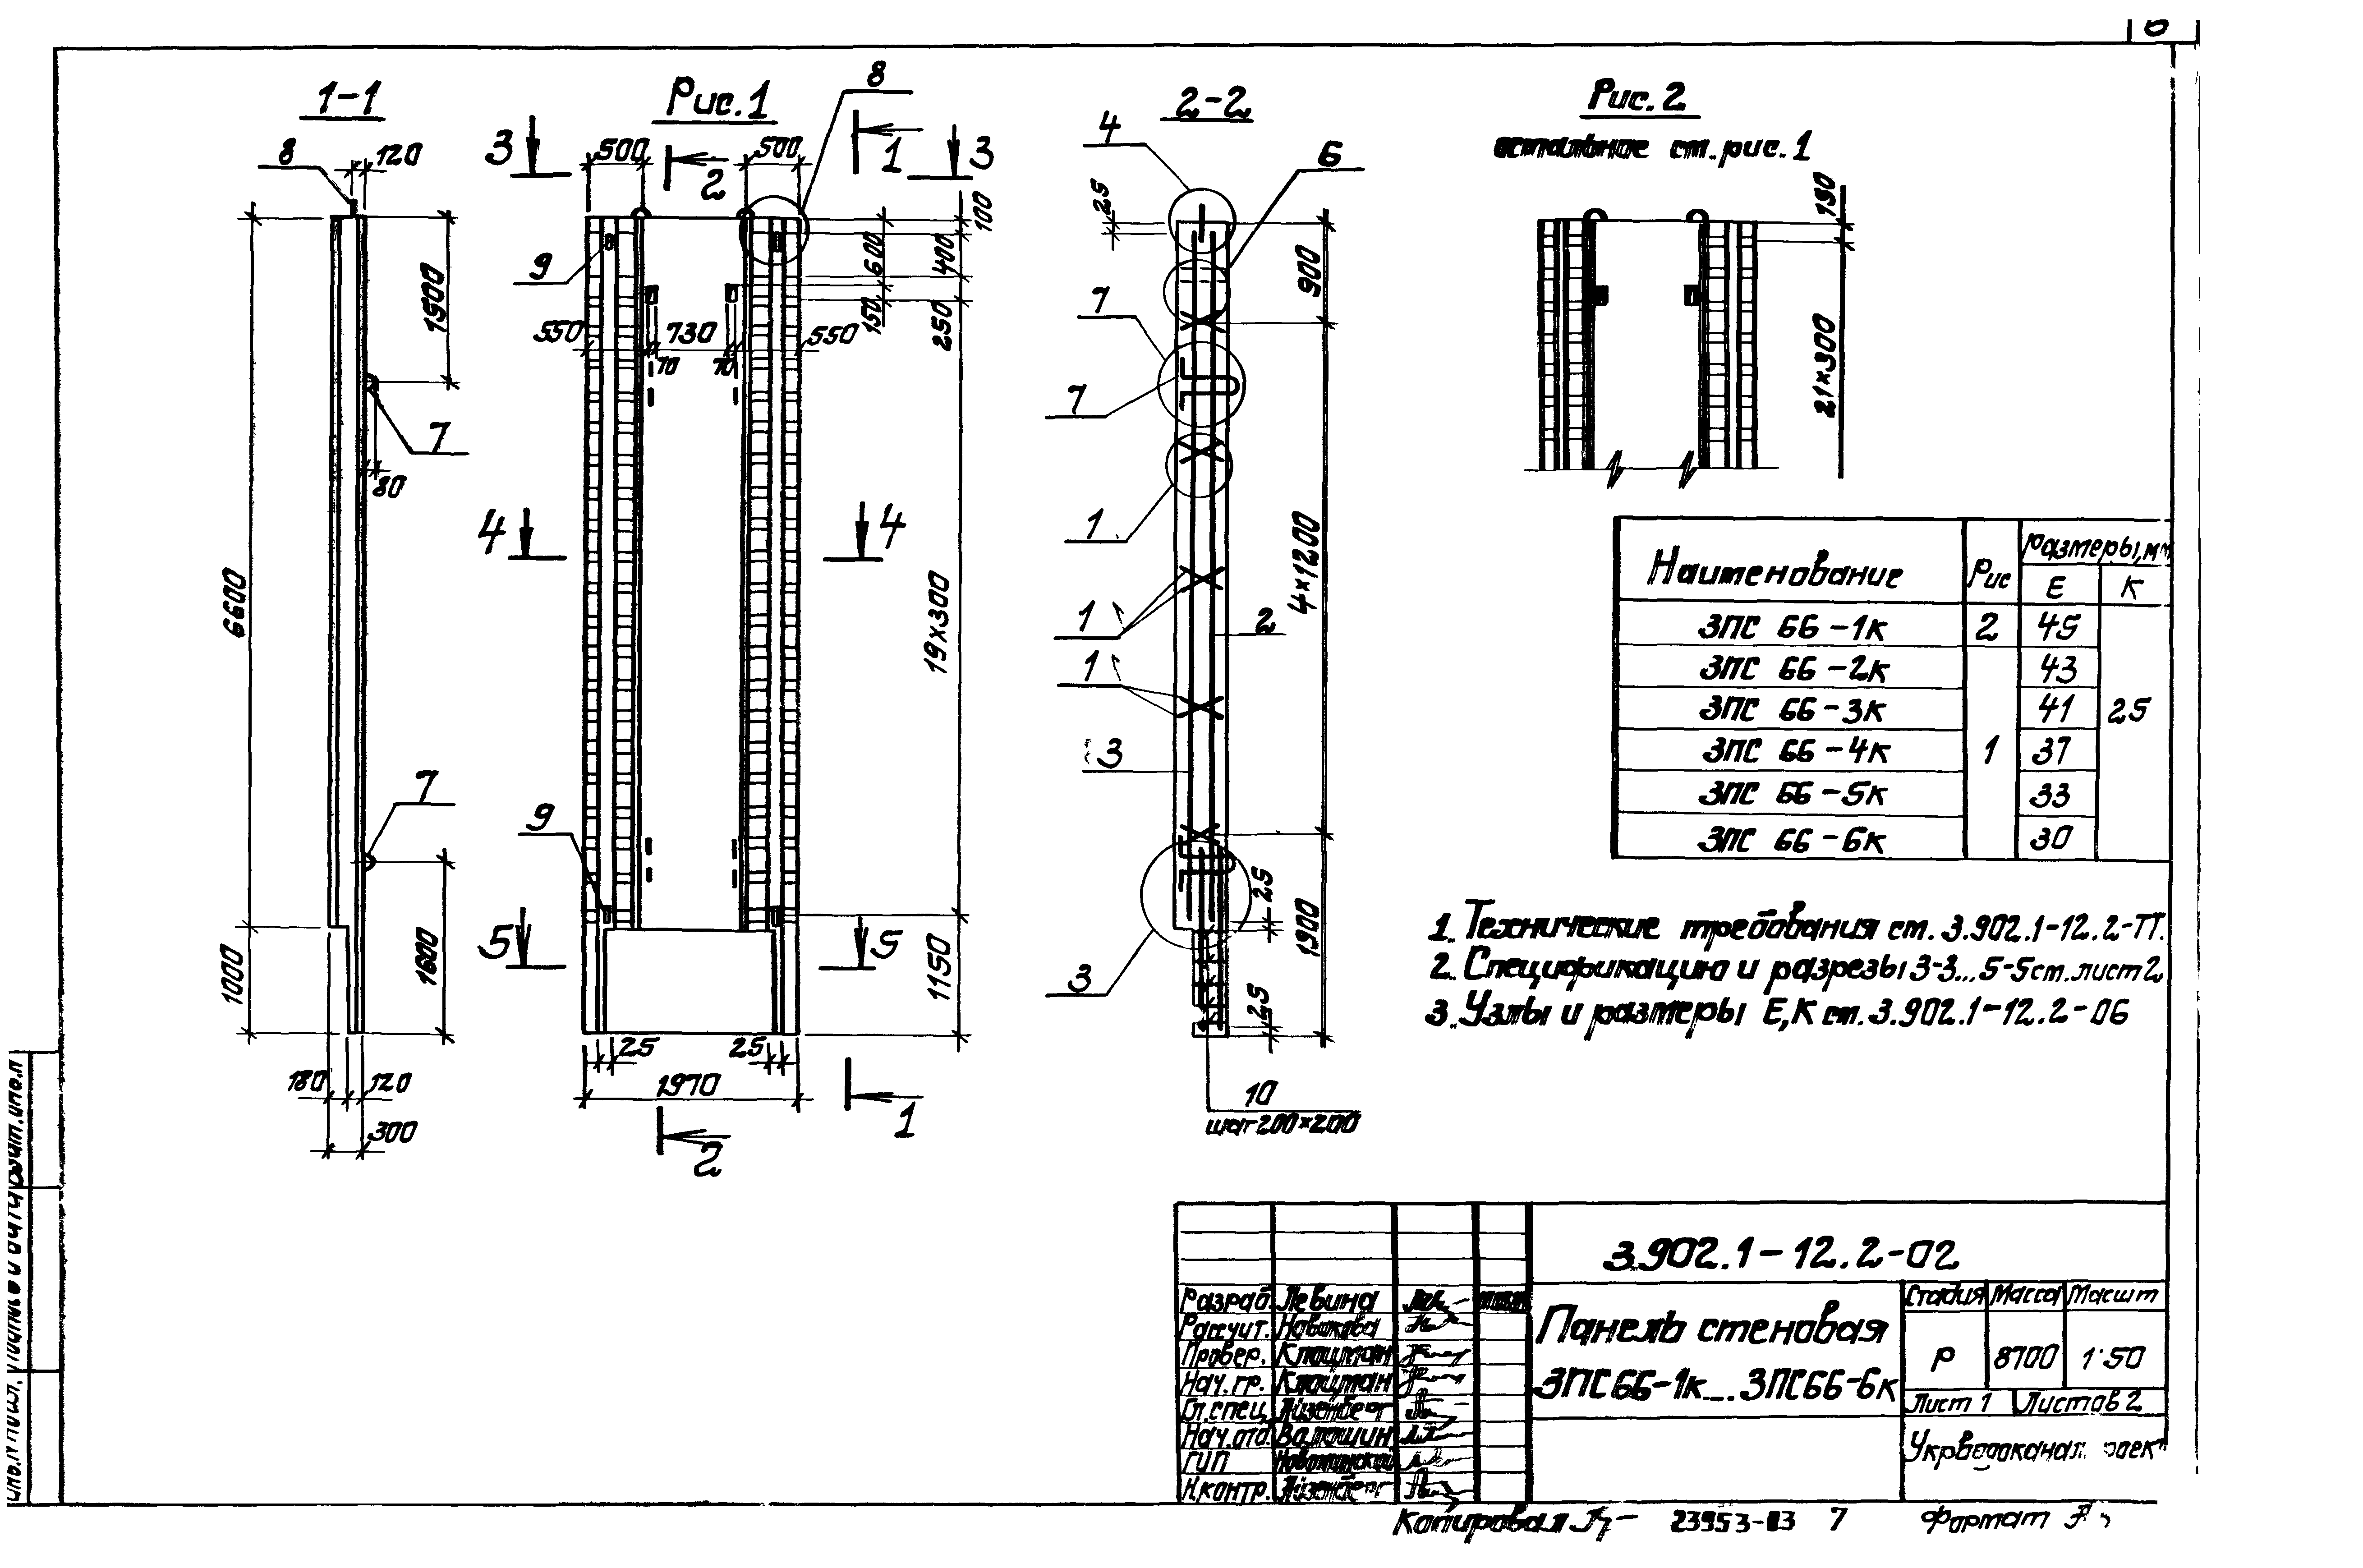 Панель стеновая 3ПС66-2к Серия 3.902.1-12, вып.2